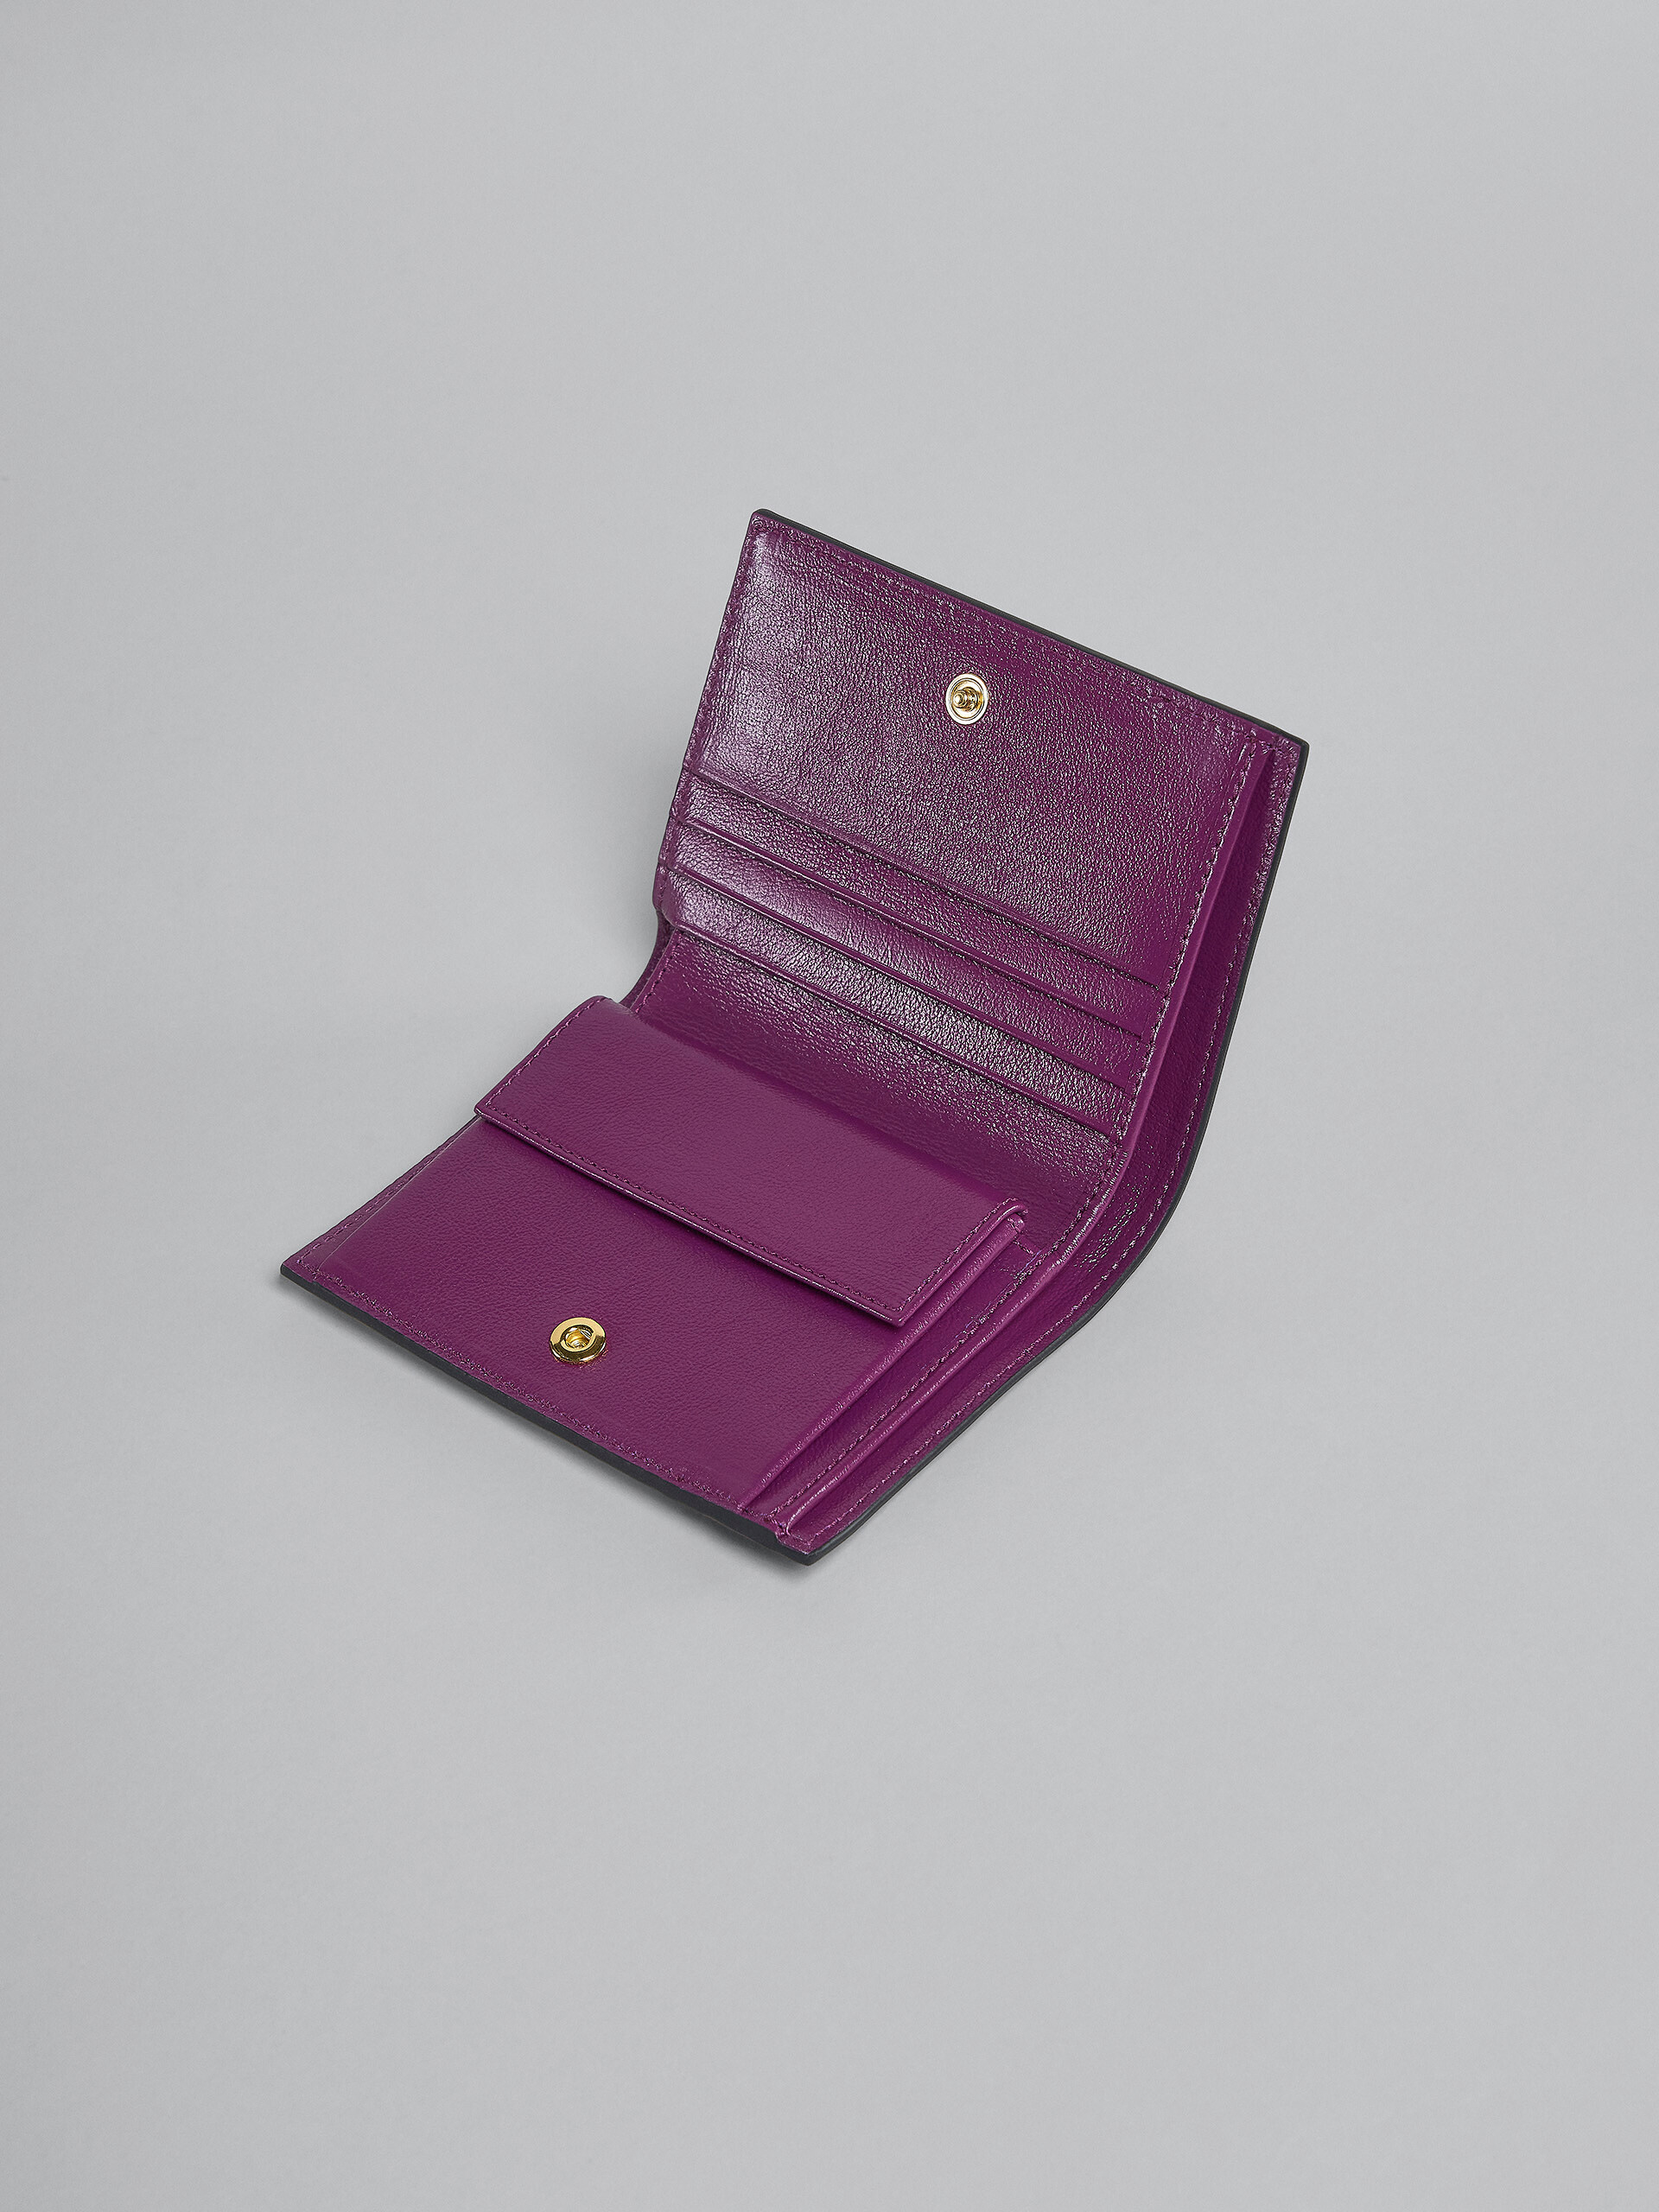 Zweifache Faltbrieftasche aus Leder in Violett und Weiß - Brieftaschen - Image 4